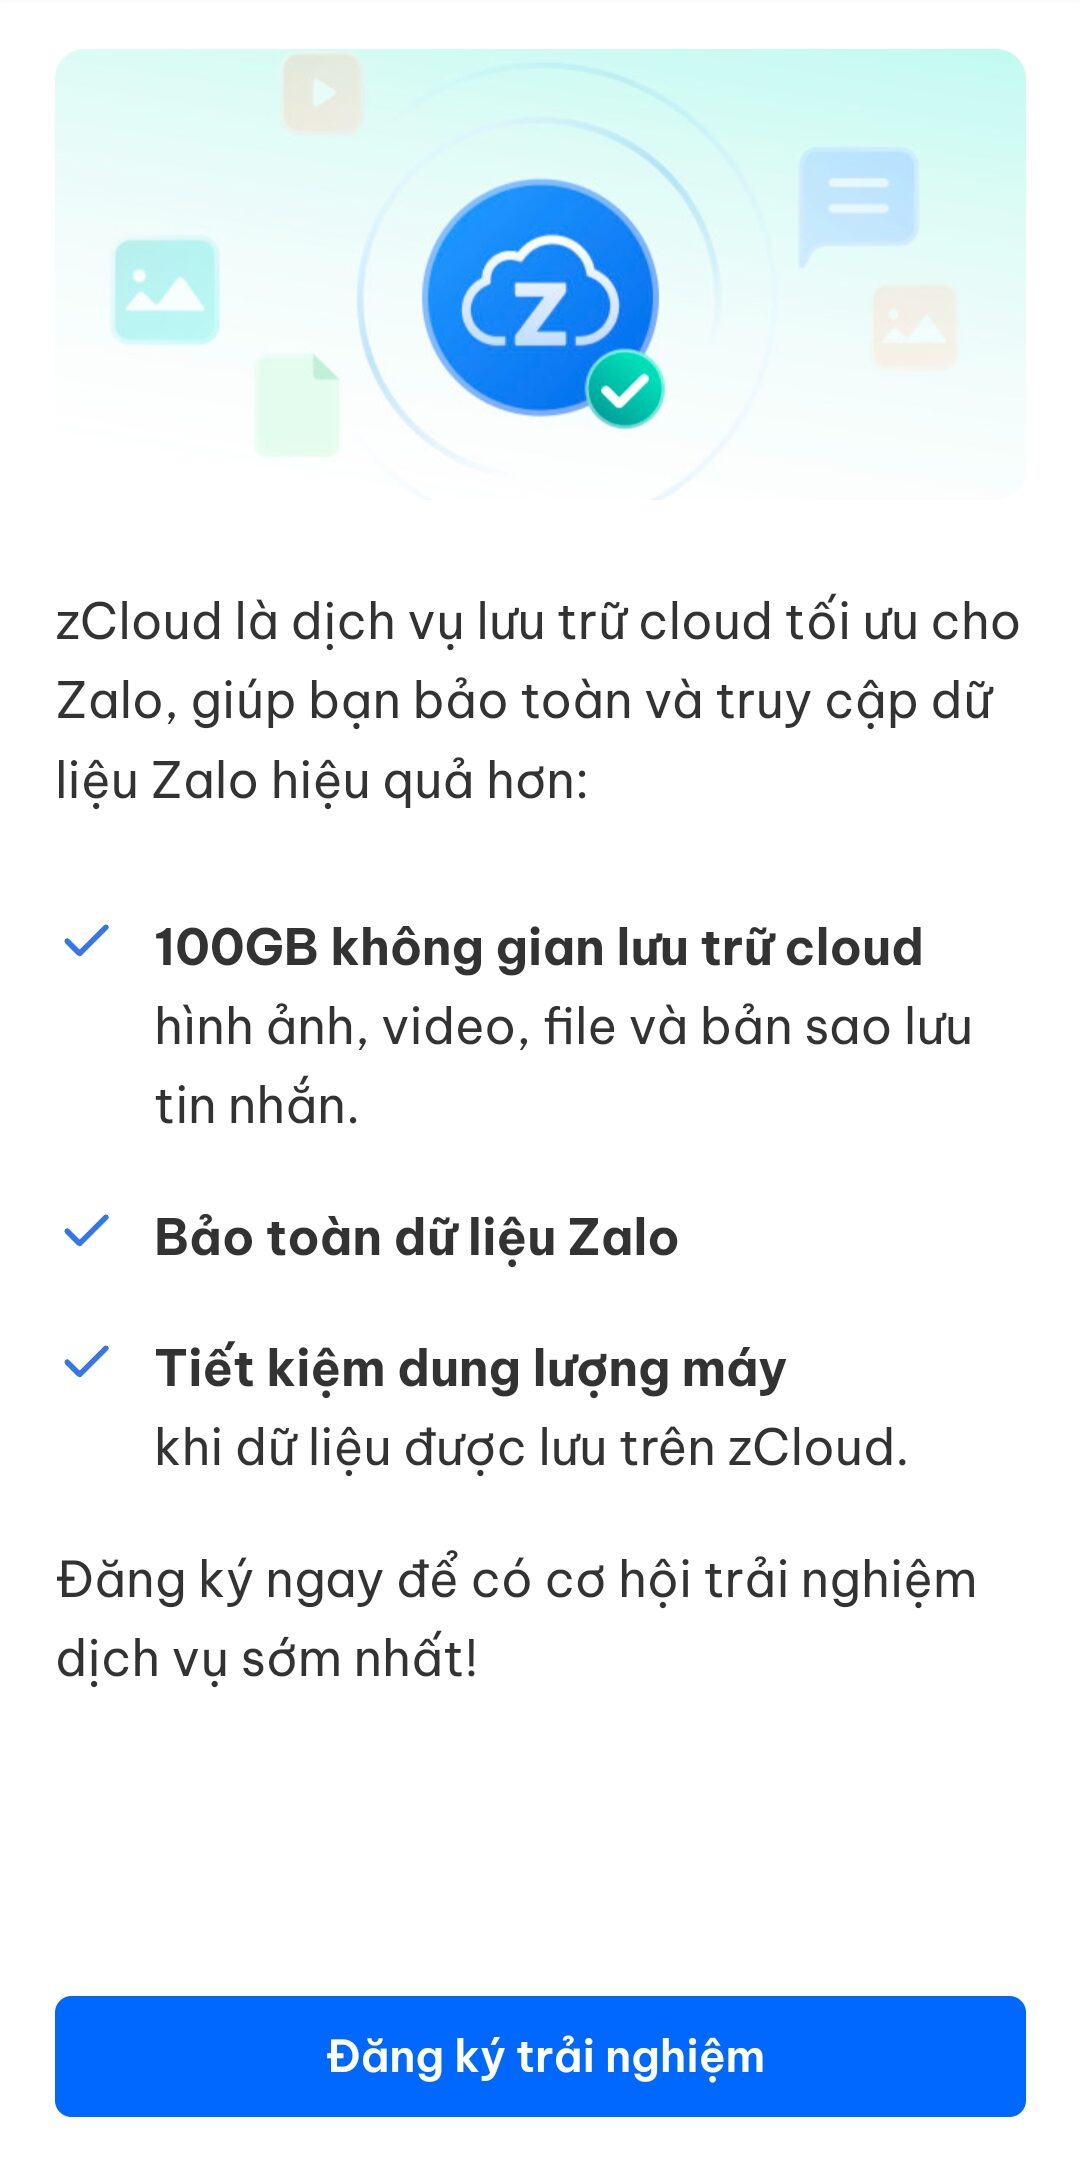 Trải nghiệm 100GB lưu trữ cloud trên Zalo